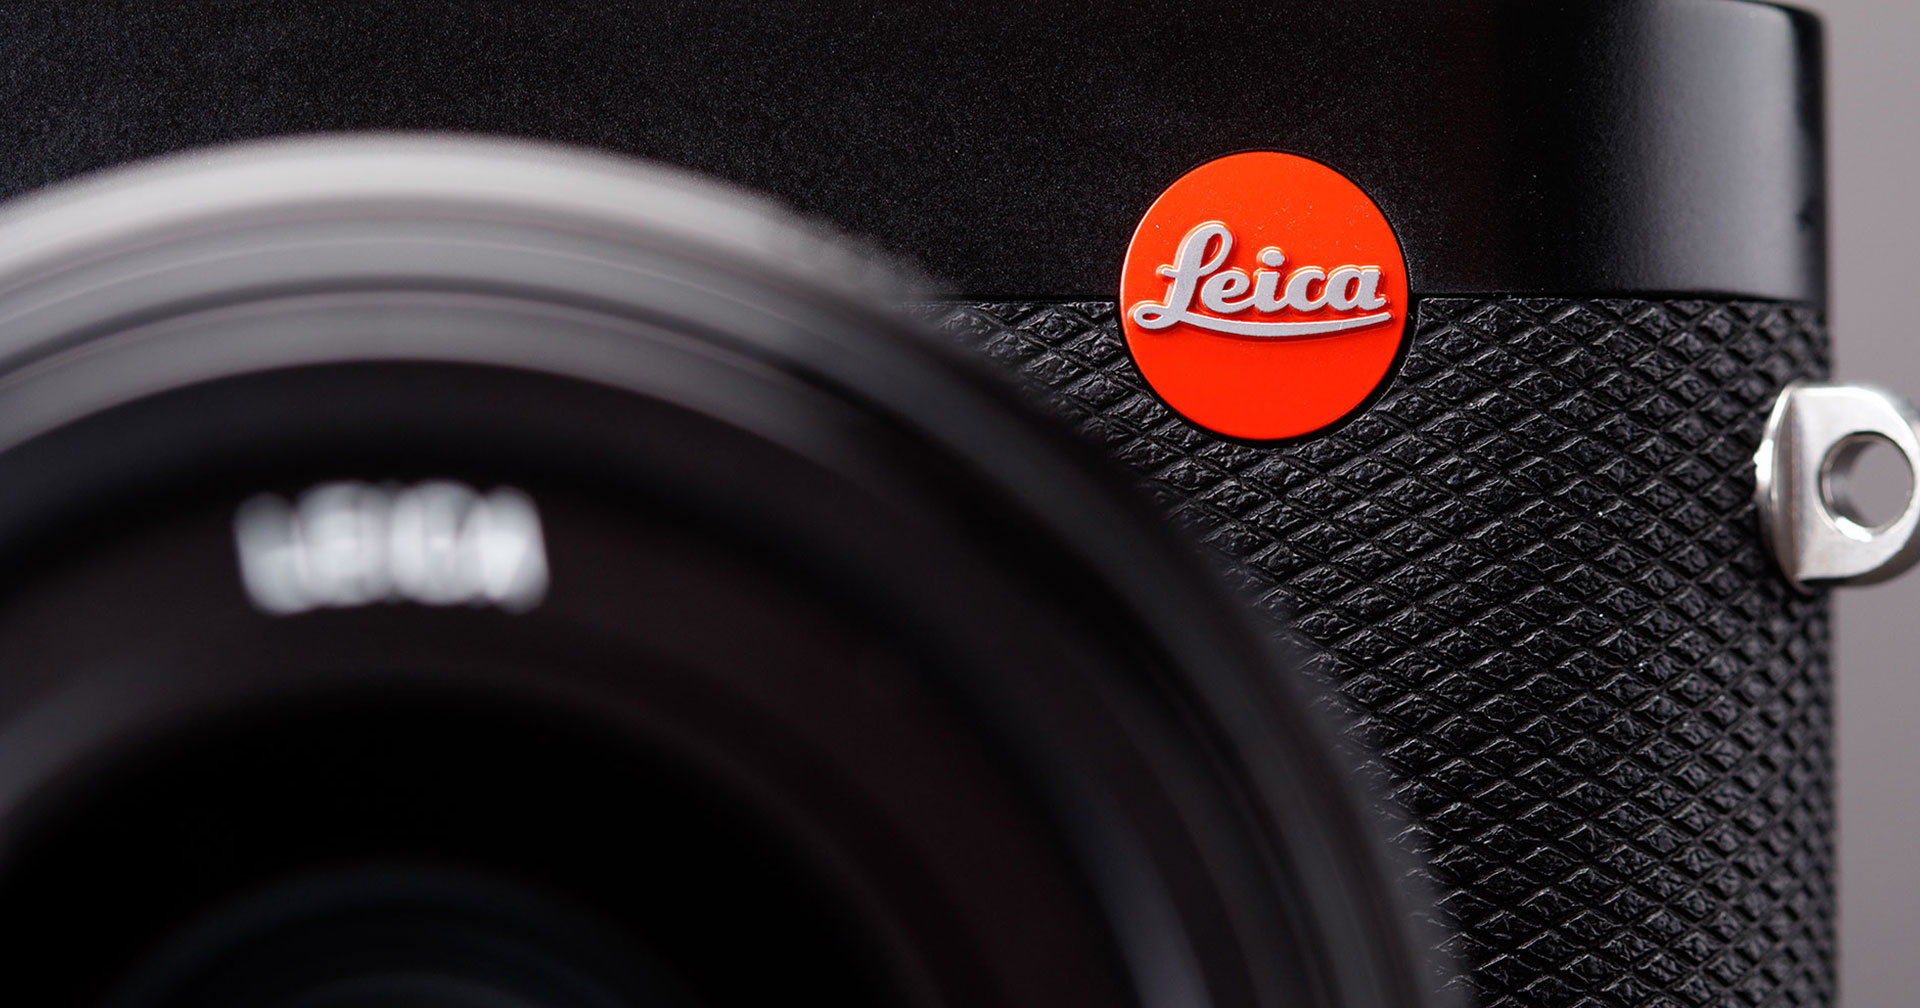 Leica เตรียมปรับราคาสินค้าขึ้น เริ่ม 1 เมษายน เป็นต้นไป